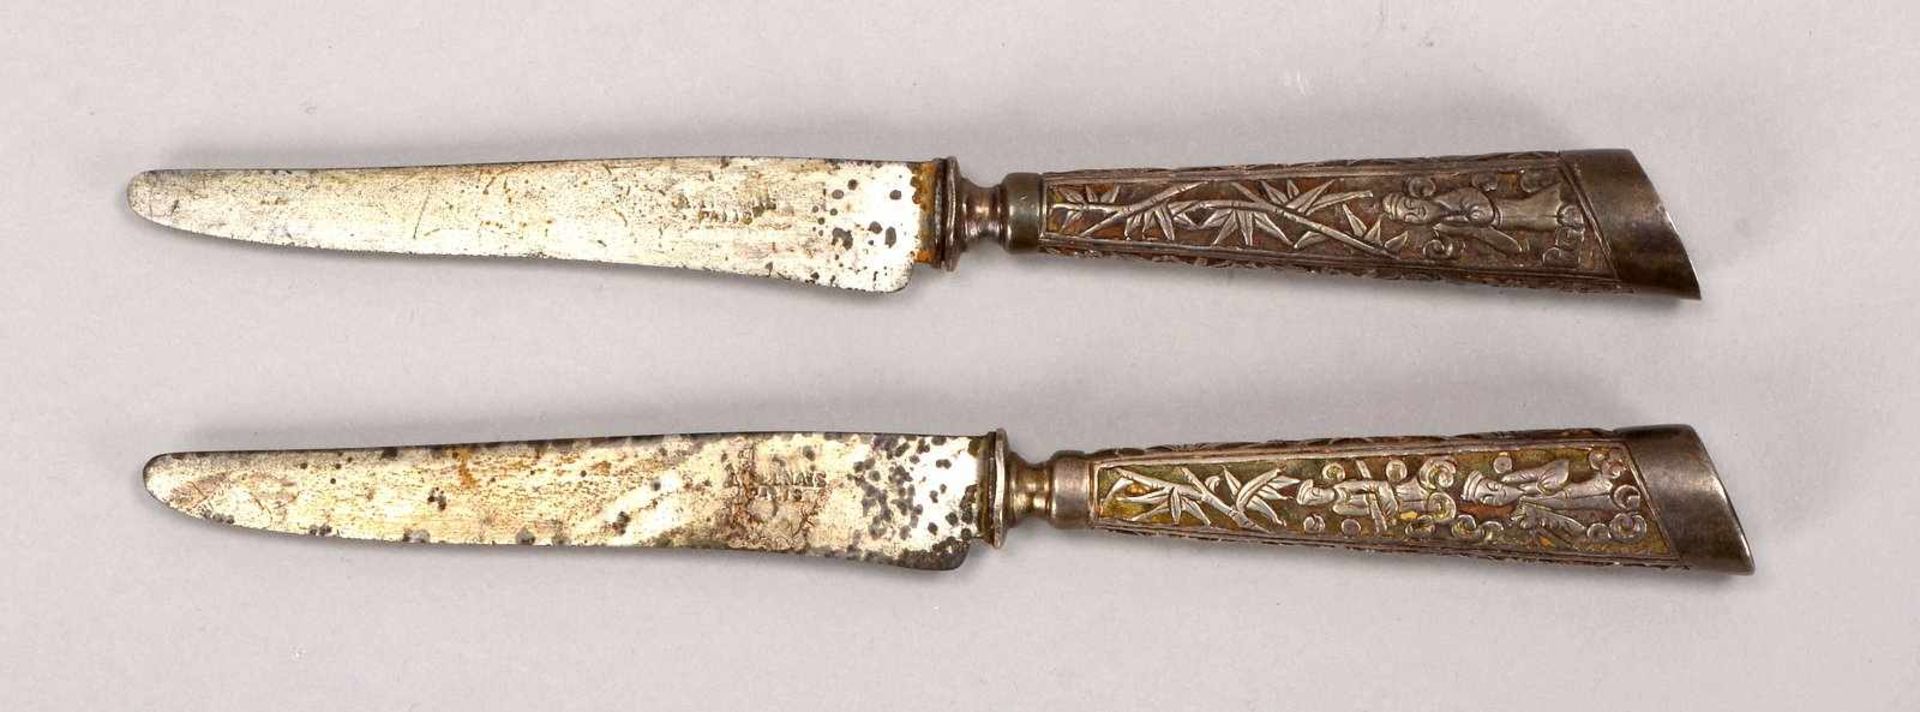 Paar Messer (China/Qing-Dynastie), Pariser Stahlkinge, Marke 'Kyyun', Silber-Griff mit Drachenmotiv; - Bild 2 aus 3